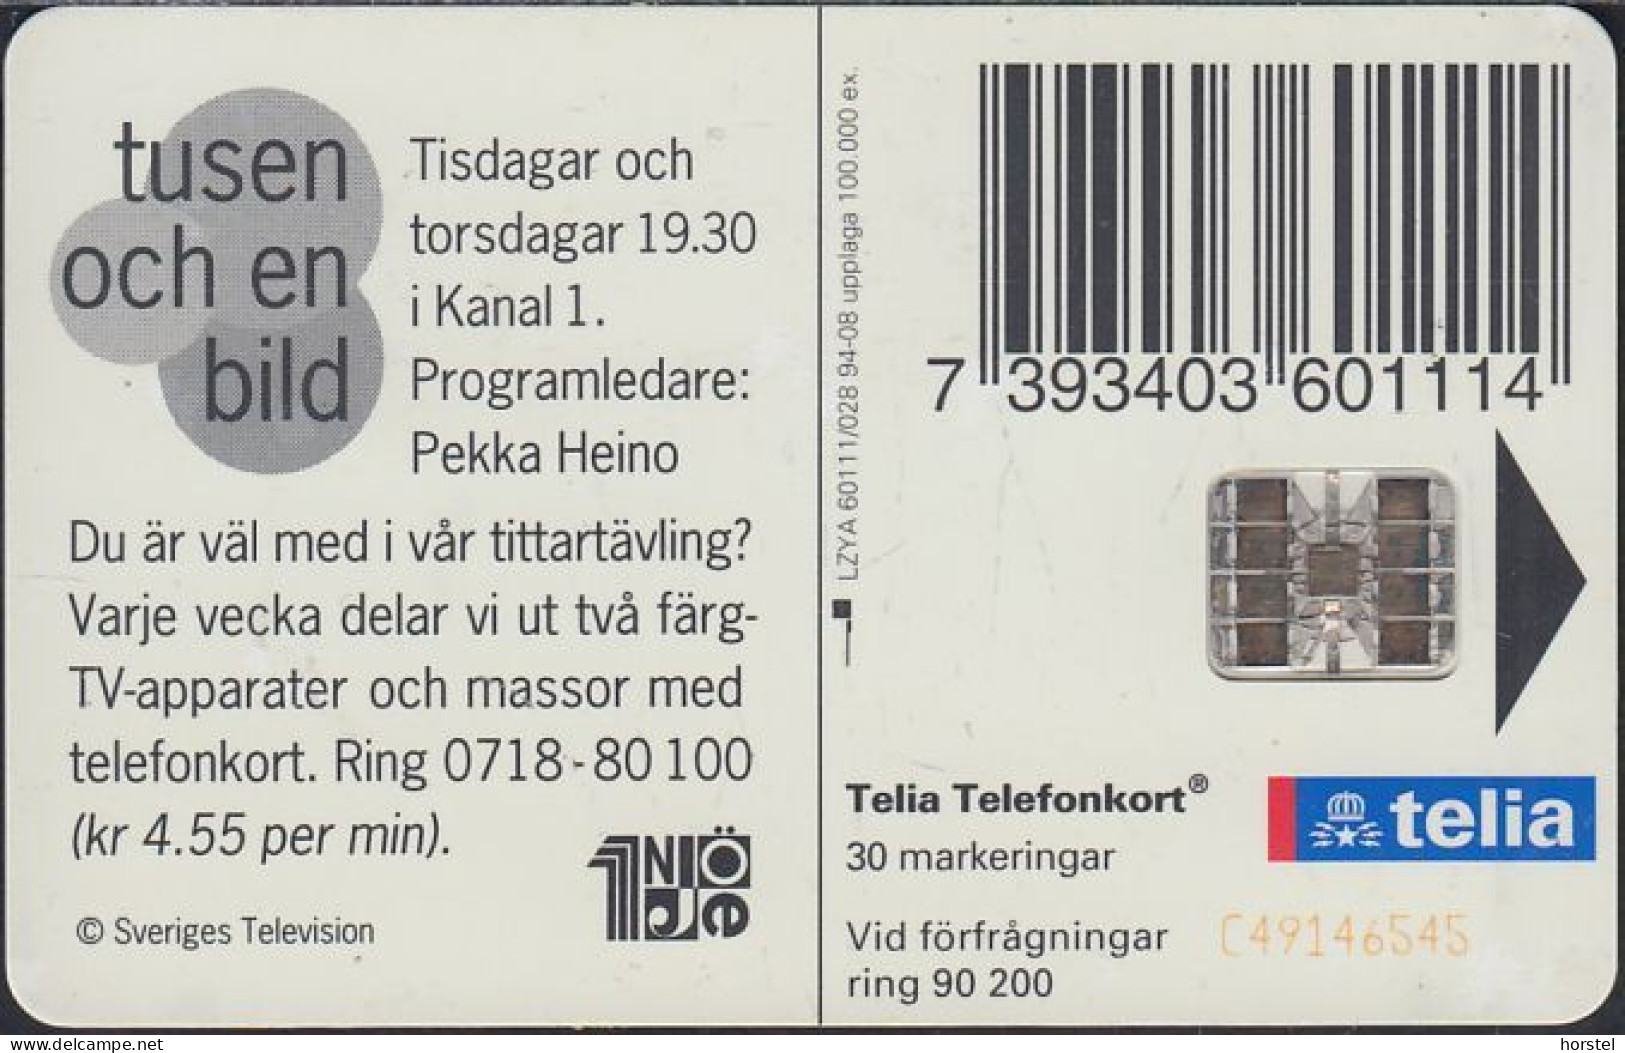 Schweden Chip 078 Tusen Och En Bild - 1001 Images - Banknote  (60111/028) C49146545 - Suecia